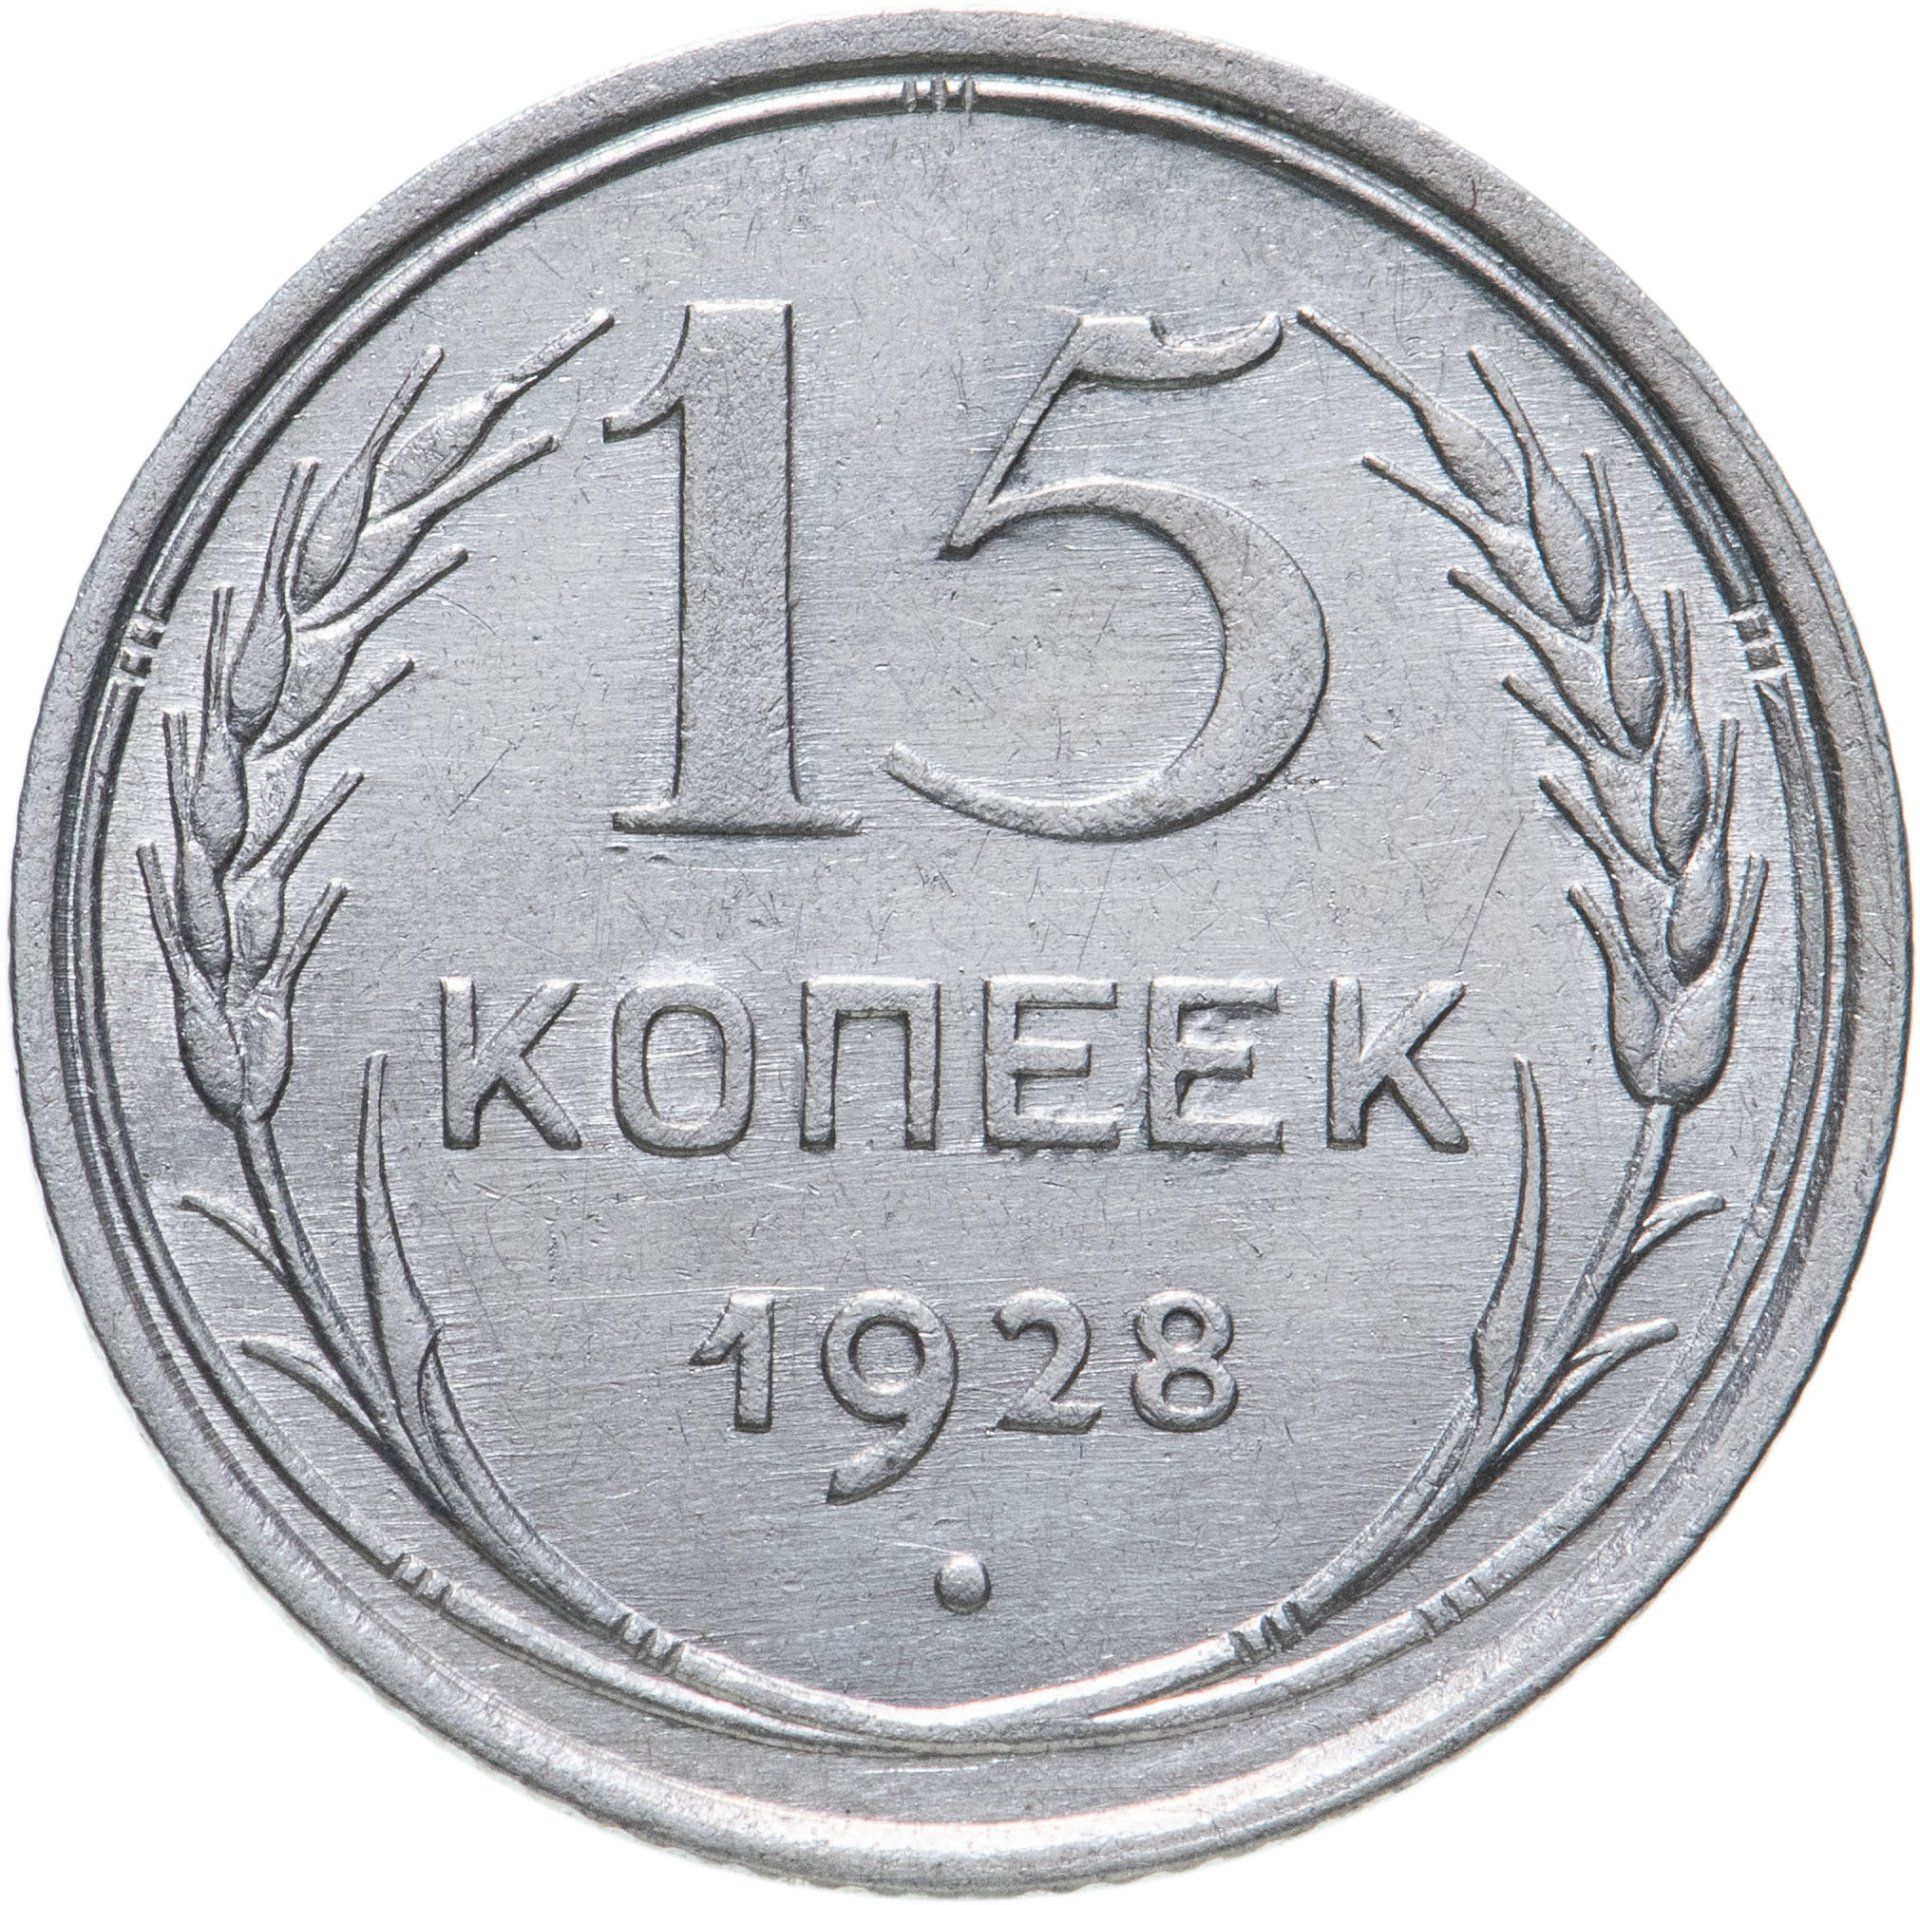 Стоимость монет 1929 года цена. 20 Копеек 1927 года. 20 Копеек 1925 года. VF. 15 Копеек 1924. 10 Копеек СССР.